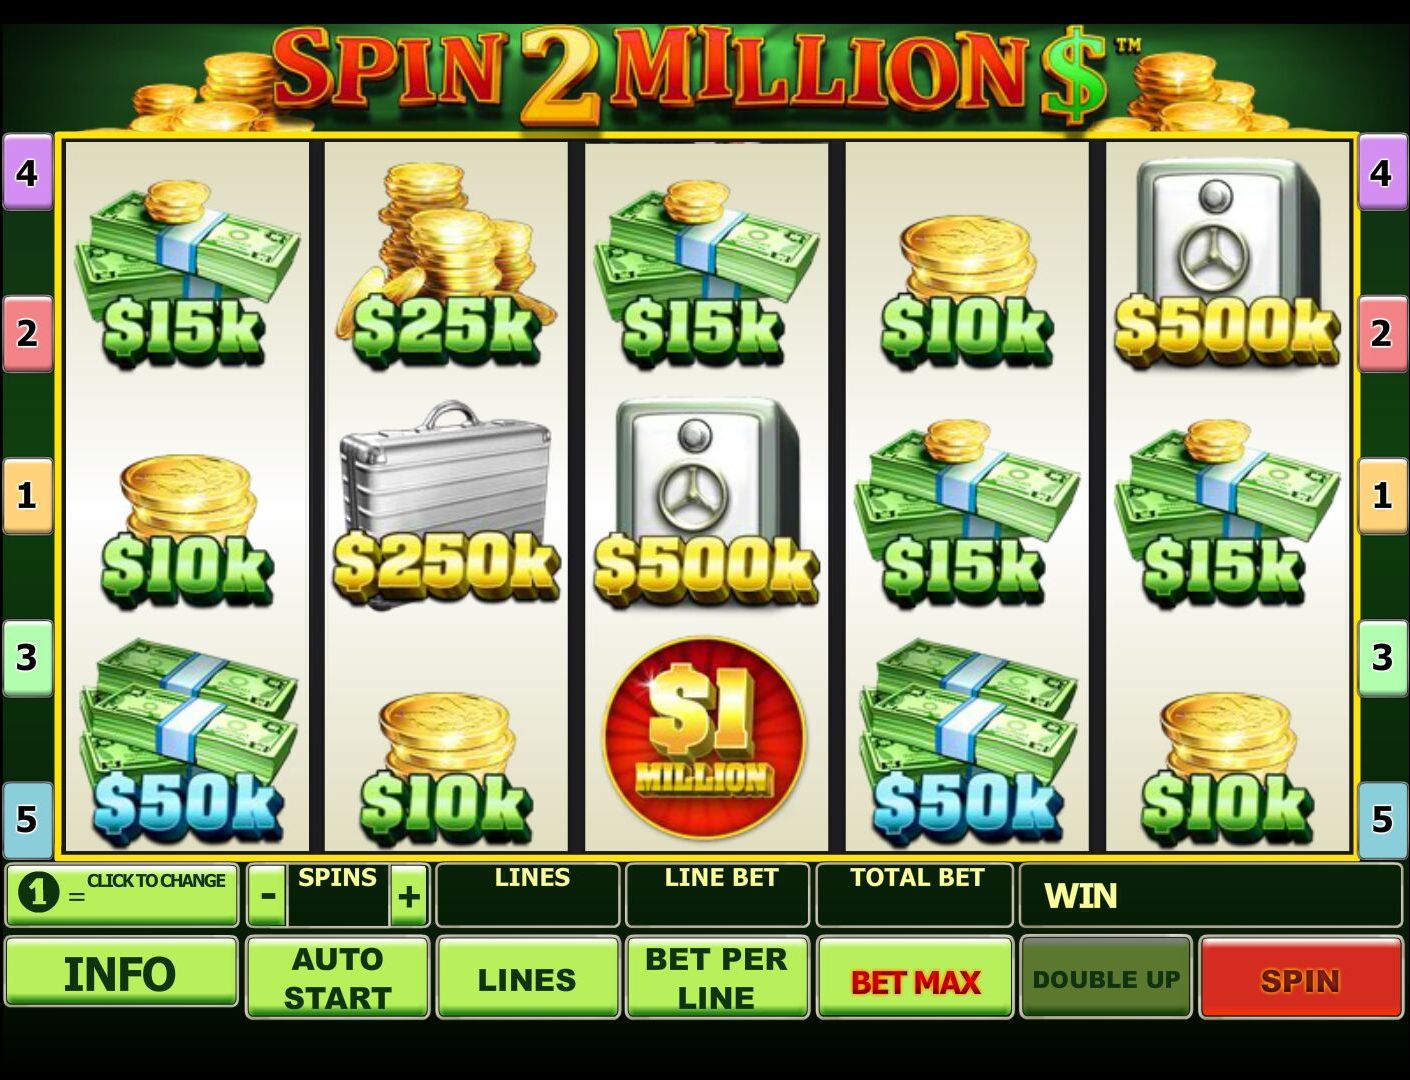 Spin 2 Million $